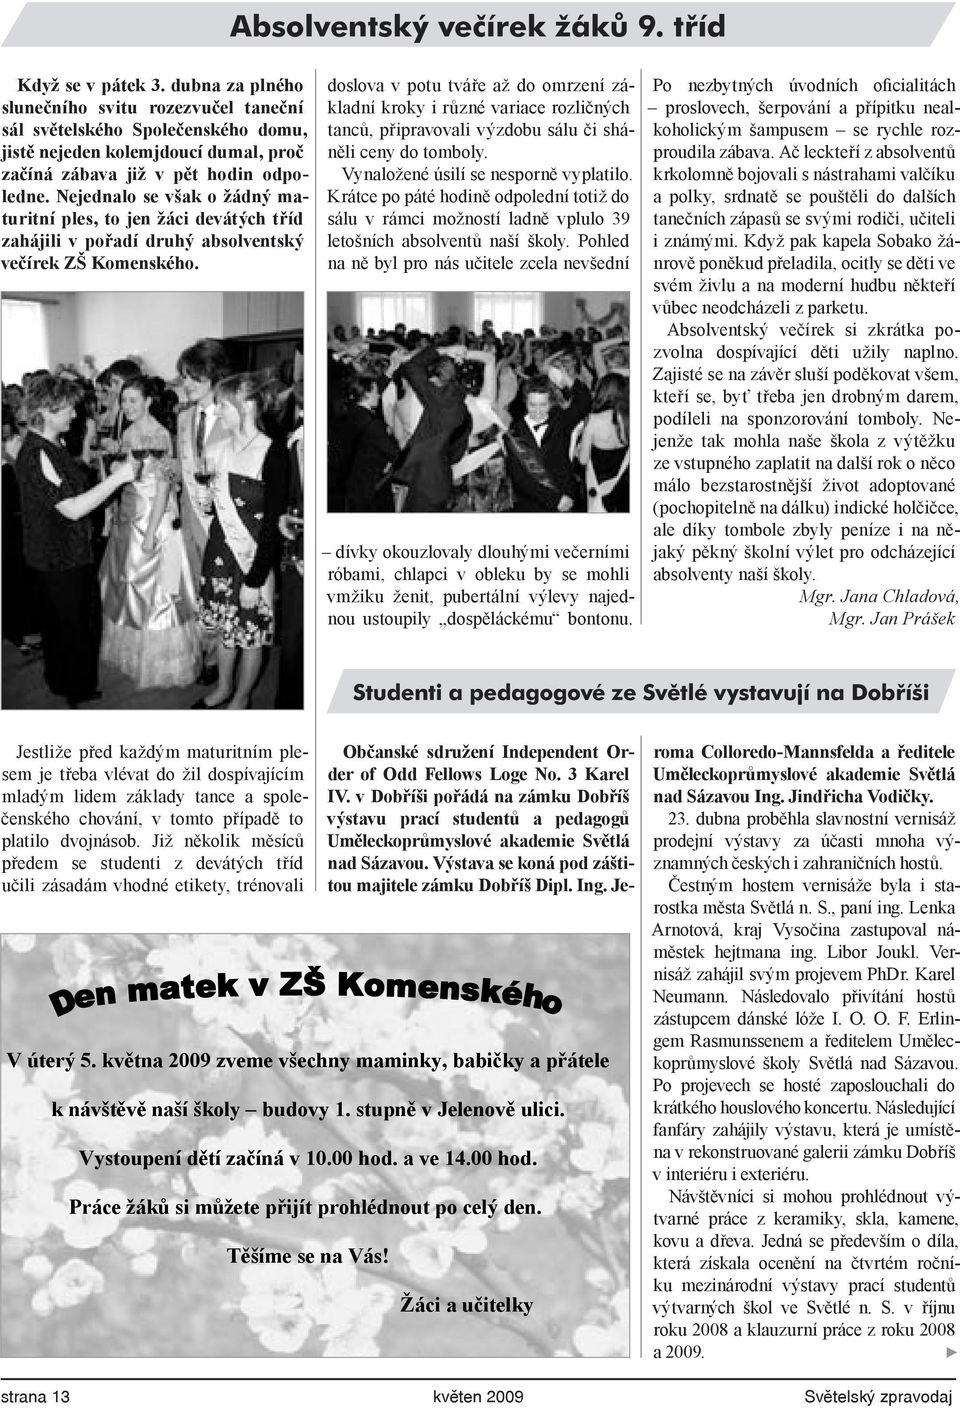 Nejednalo se však o žádný maturitní ples, to jen žáci devátých tříd zahájili v pořadí druhý absolventský večírek ZŠ Komenského.